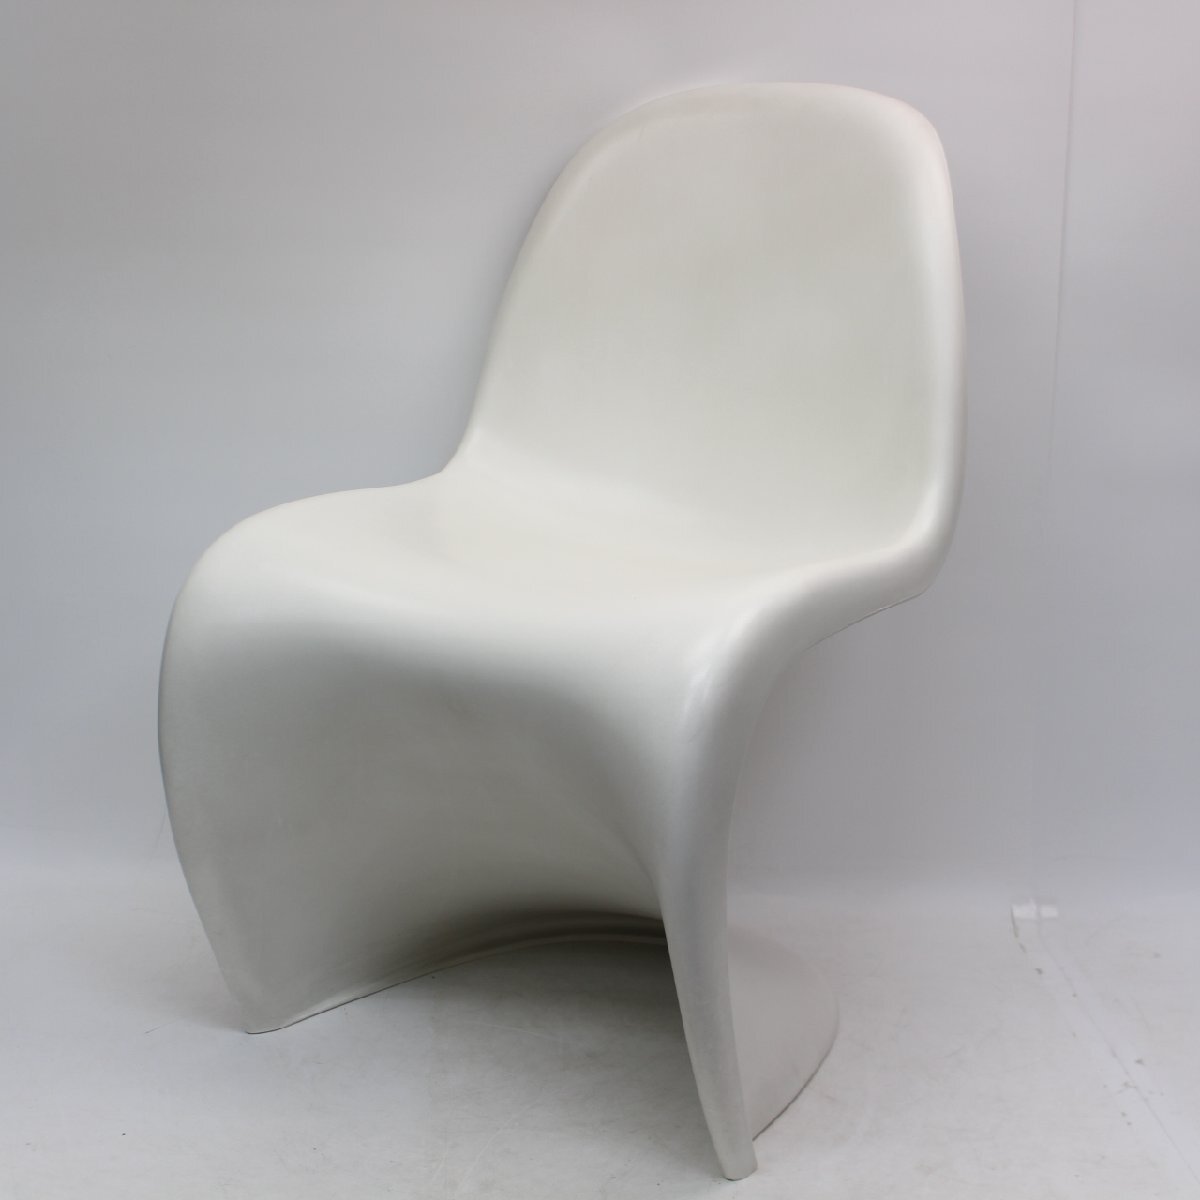 071)ヴィトラ vitra Panton Chair パントンチェア ホワイト 椅子 白_画像1